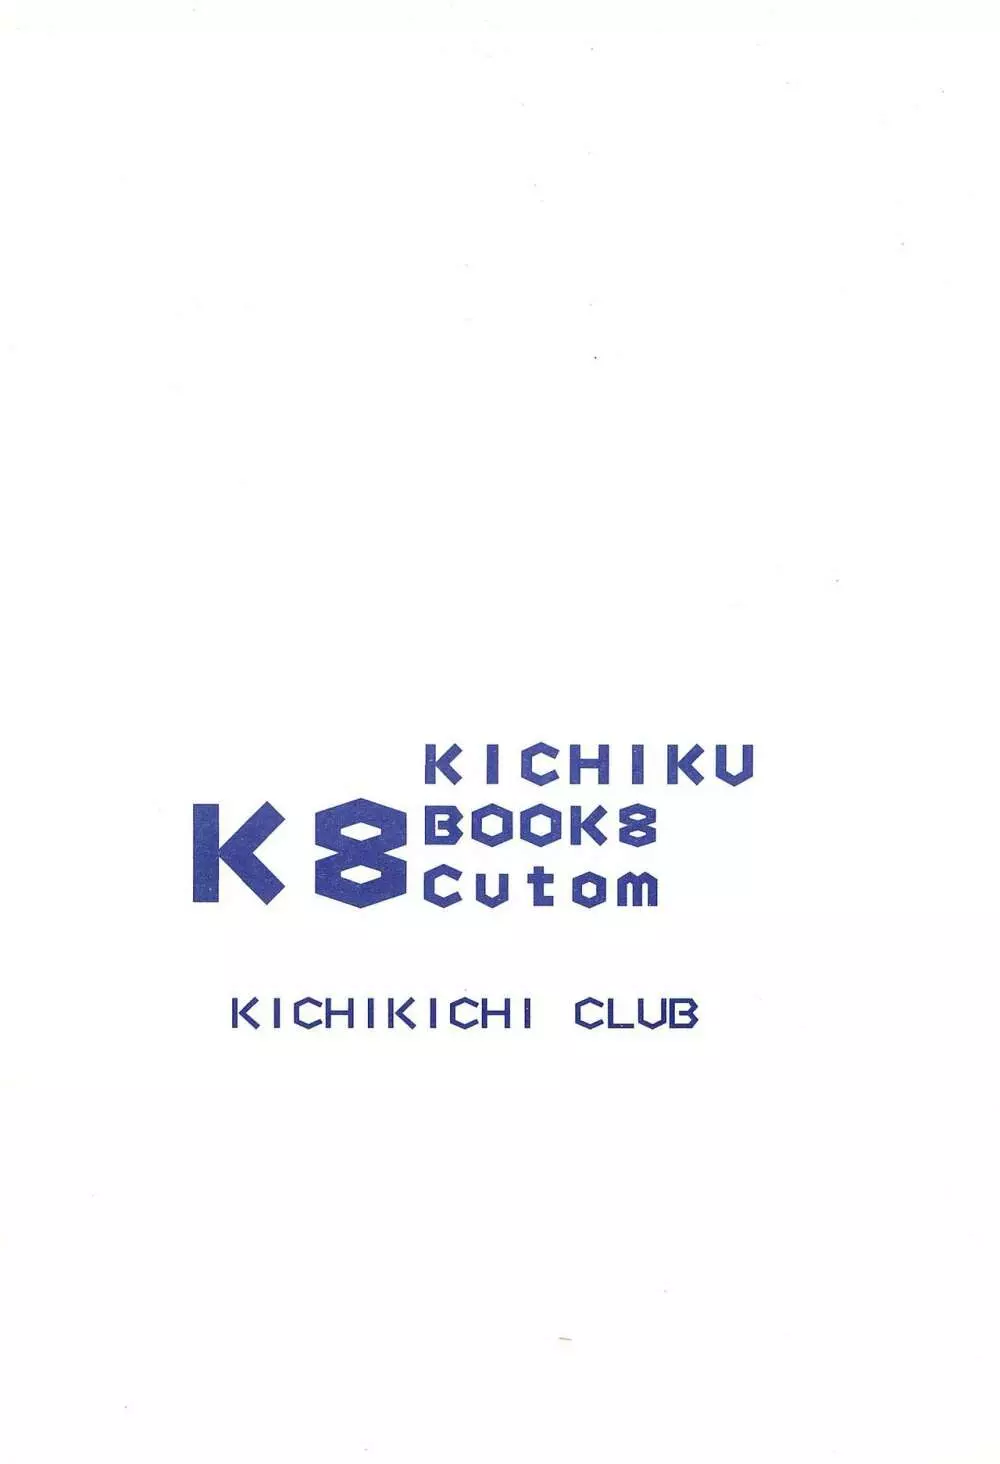 K8 KICHIKU BOOK8 COSTOM 20ページ